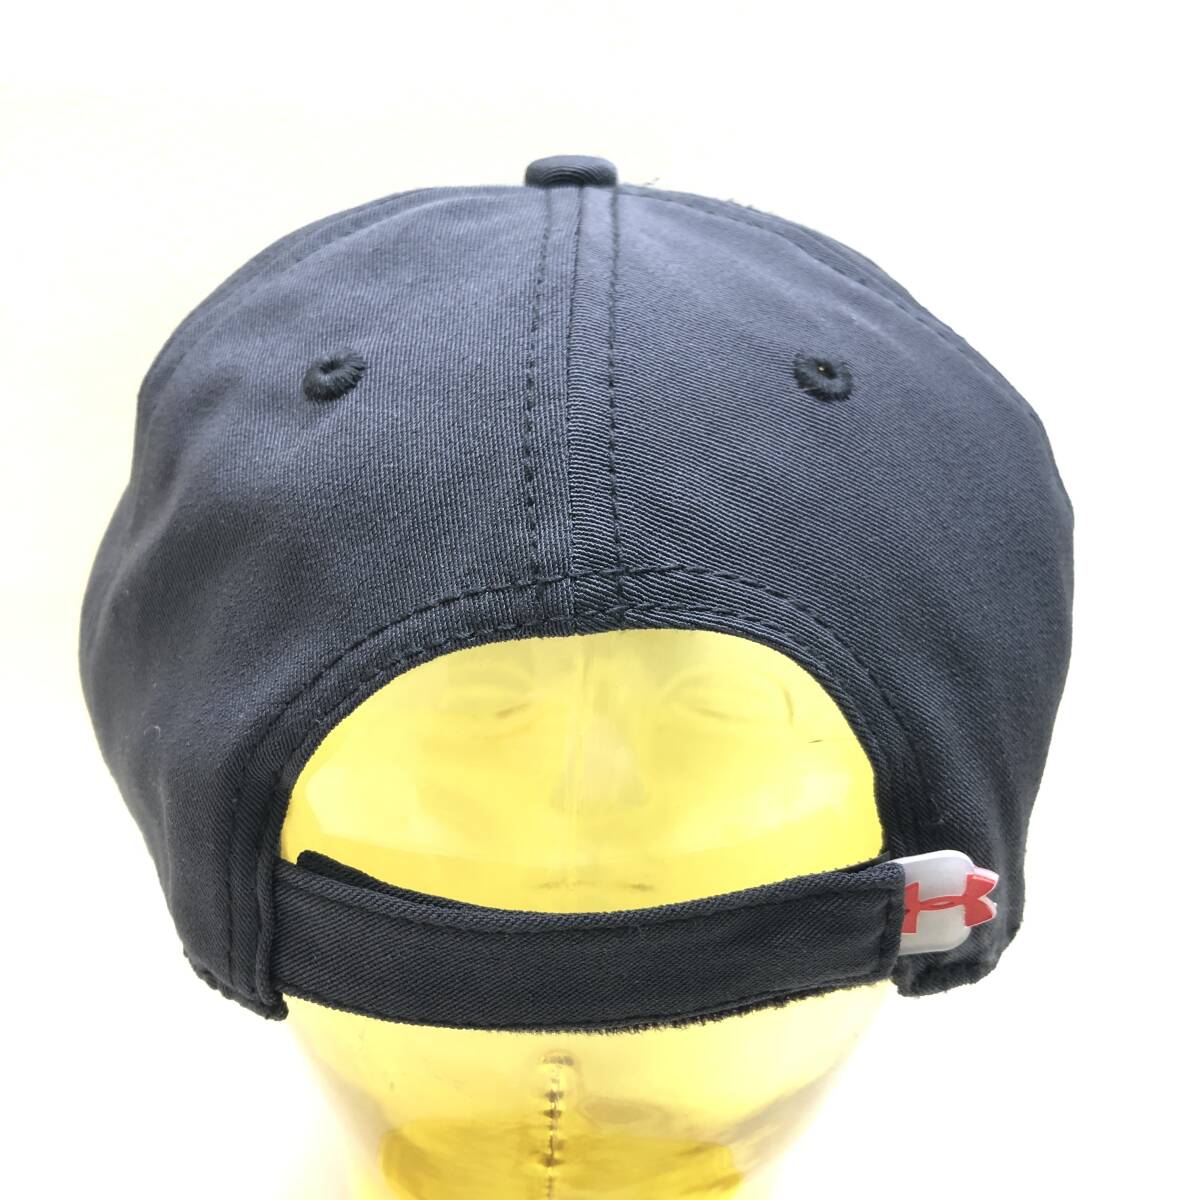 ★UNDER ARMOUR アンダーアーマー OSFA メンズ 帽子 キャップ 服飾小物 アパレル ファッション 中古品★K01363の画像4